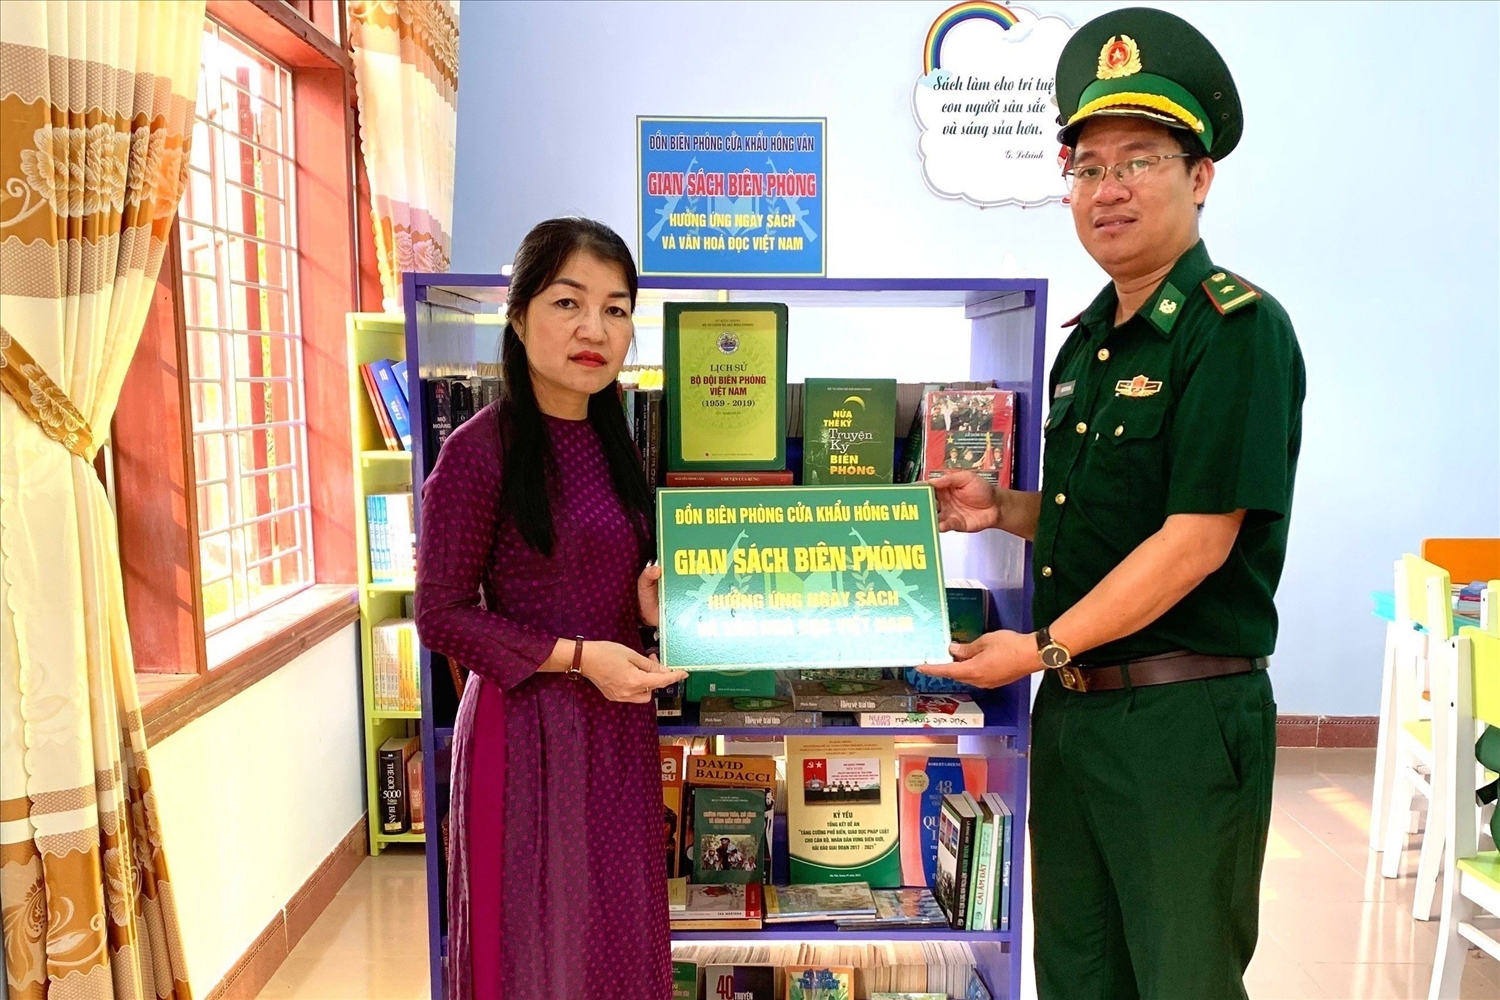 Đại diện Đồn biên phòng cửa khẩu Hồng Vân Tặng“Gian sách biên phòng” cho trường THCS-THPT Hồng Vân. 